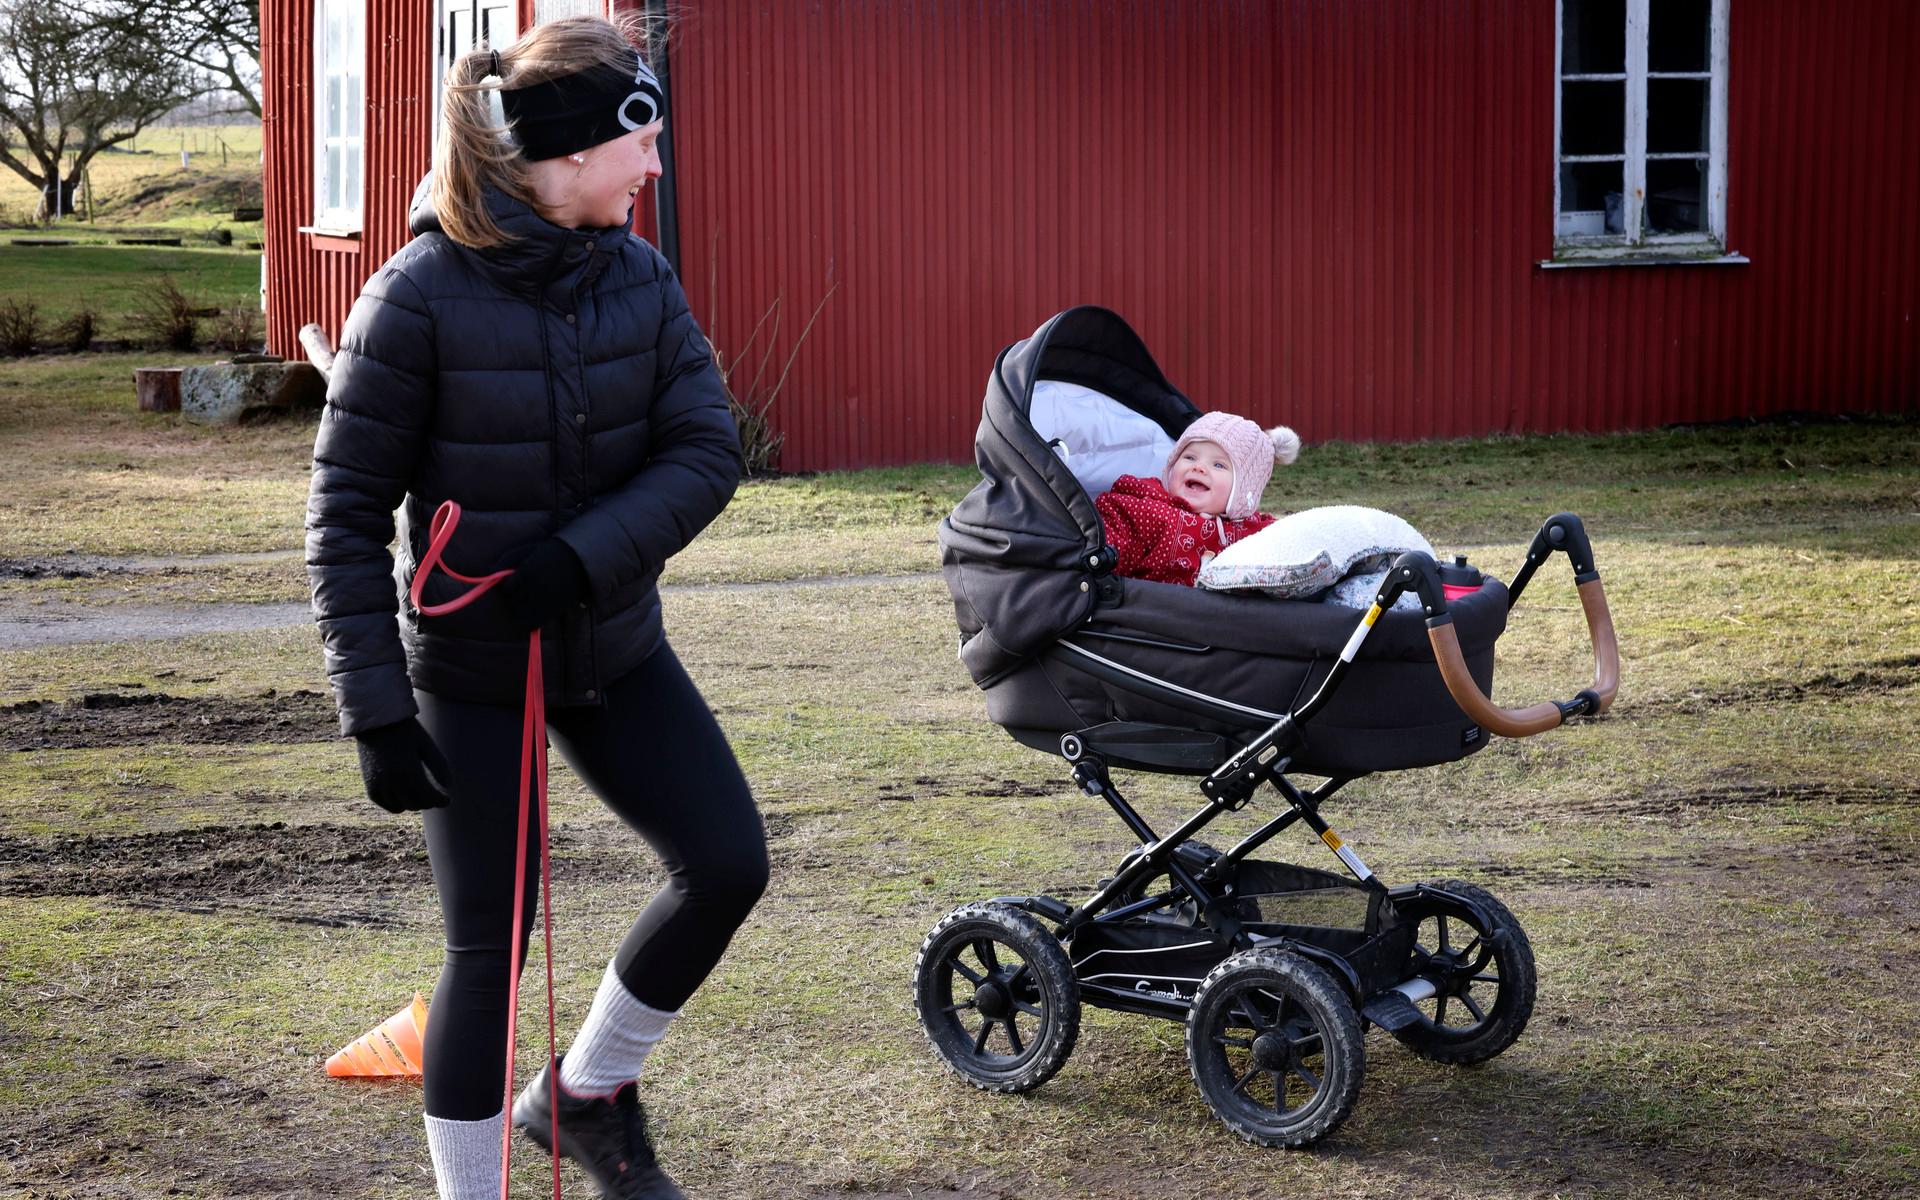 Maja Englund och dottern Molly, åtta månader, från Derome, började på utomhusträningen när Molly var fem veckor. – Det var spännande att testa att träna utomhus och jag sökte efter just mammaträning hos någon som har kompetens för träning efter förlossningen, säger hon.